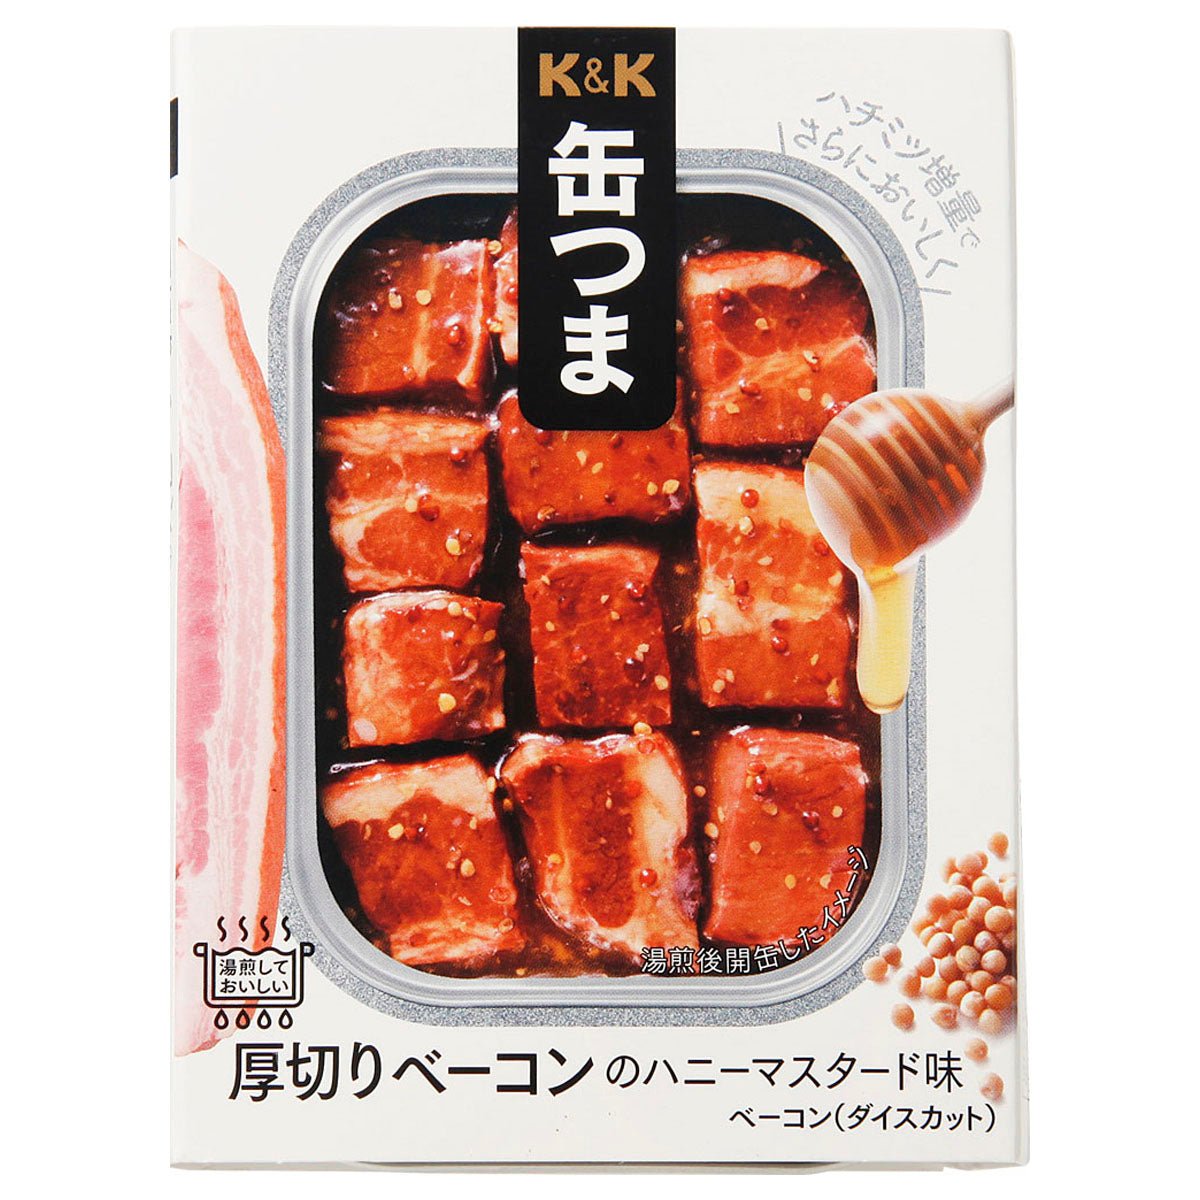 K＆K罐厚切成薄片的培根蜂蜜芥末味